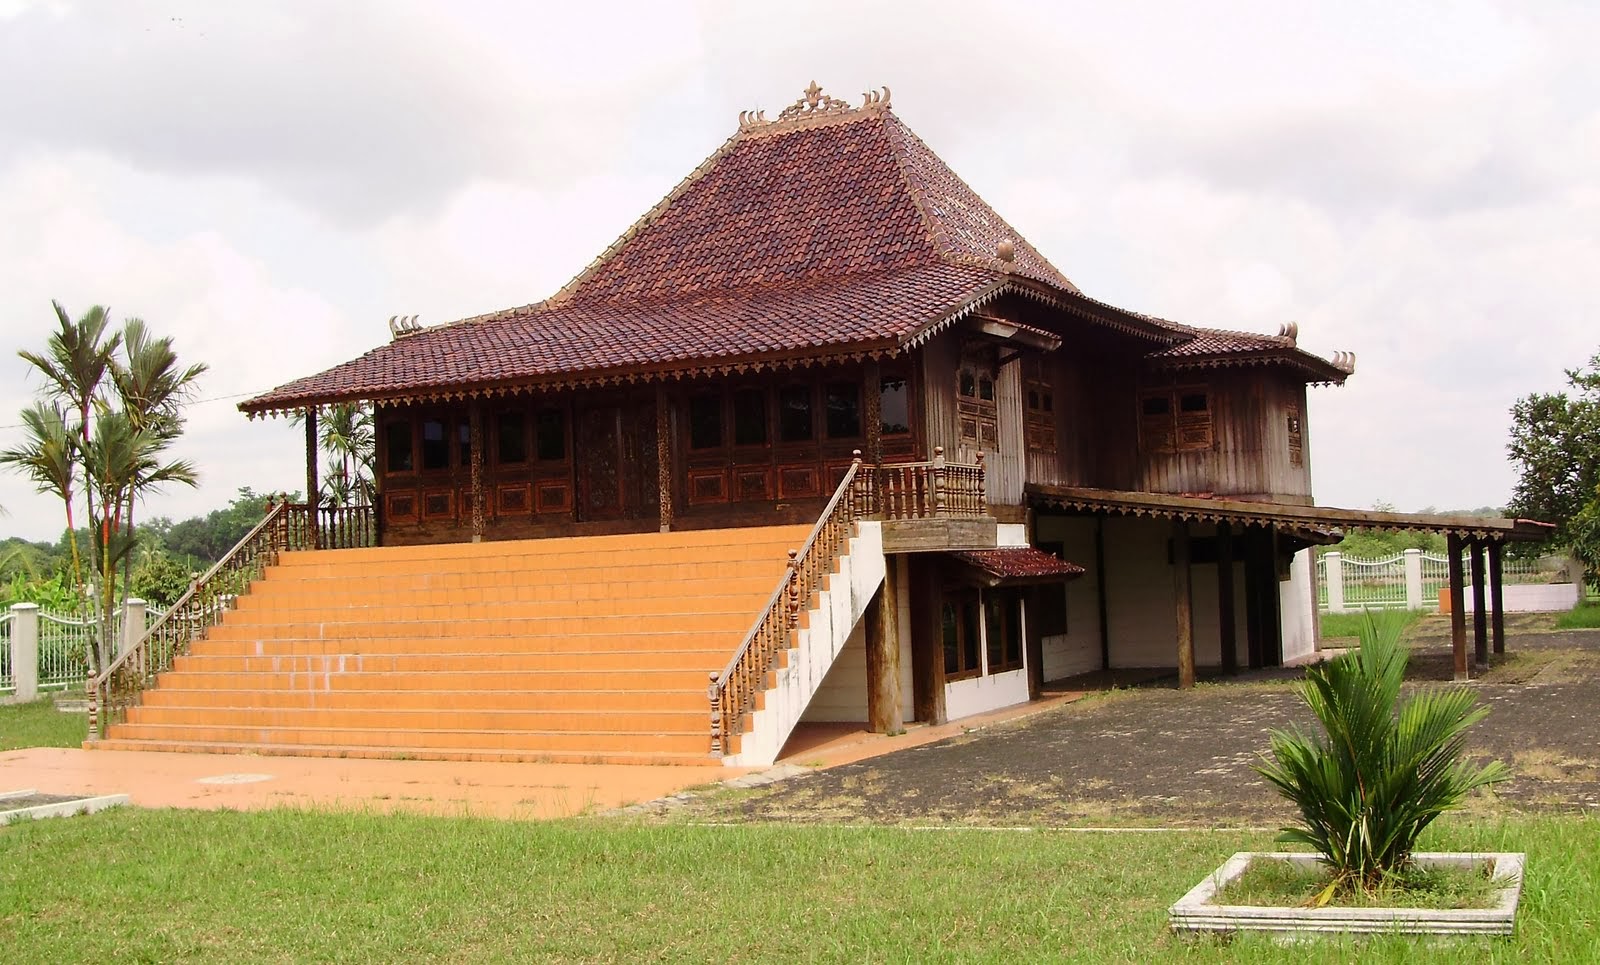 Rumah adat limas- sumatera selatan: Gambar Rumah Adat 